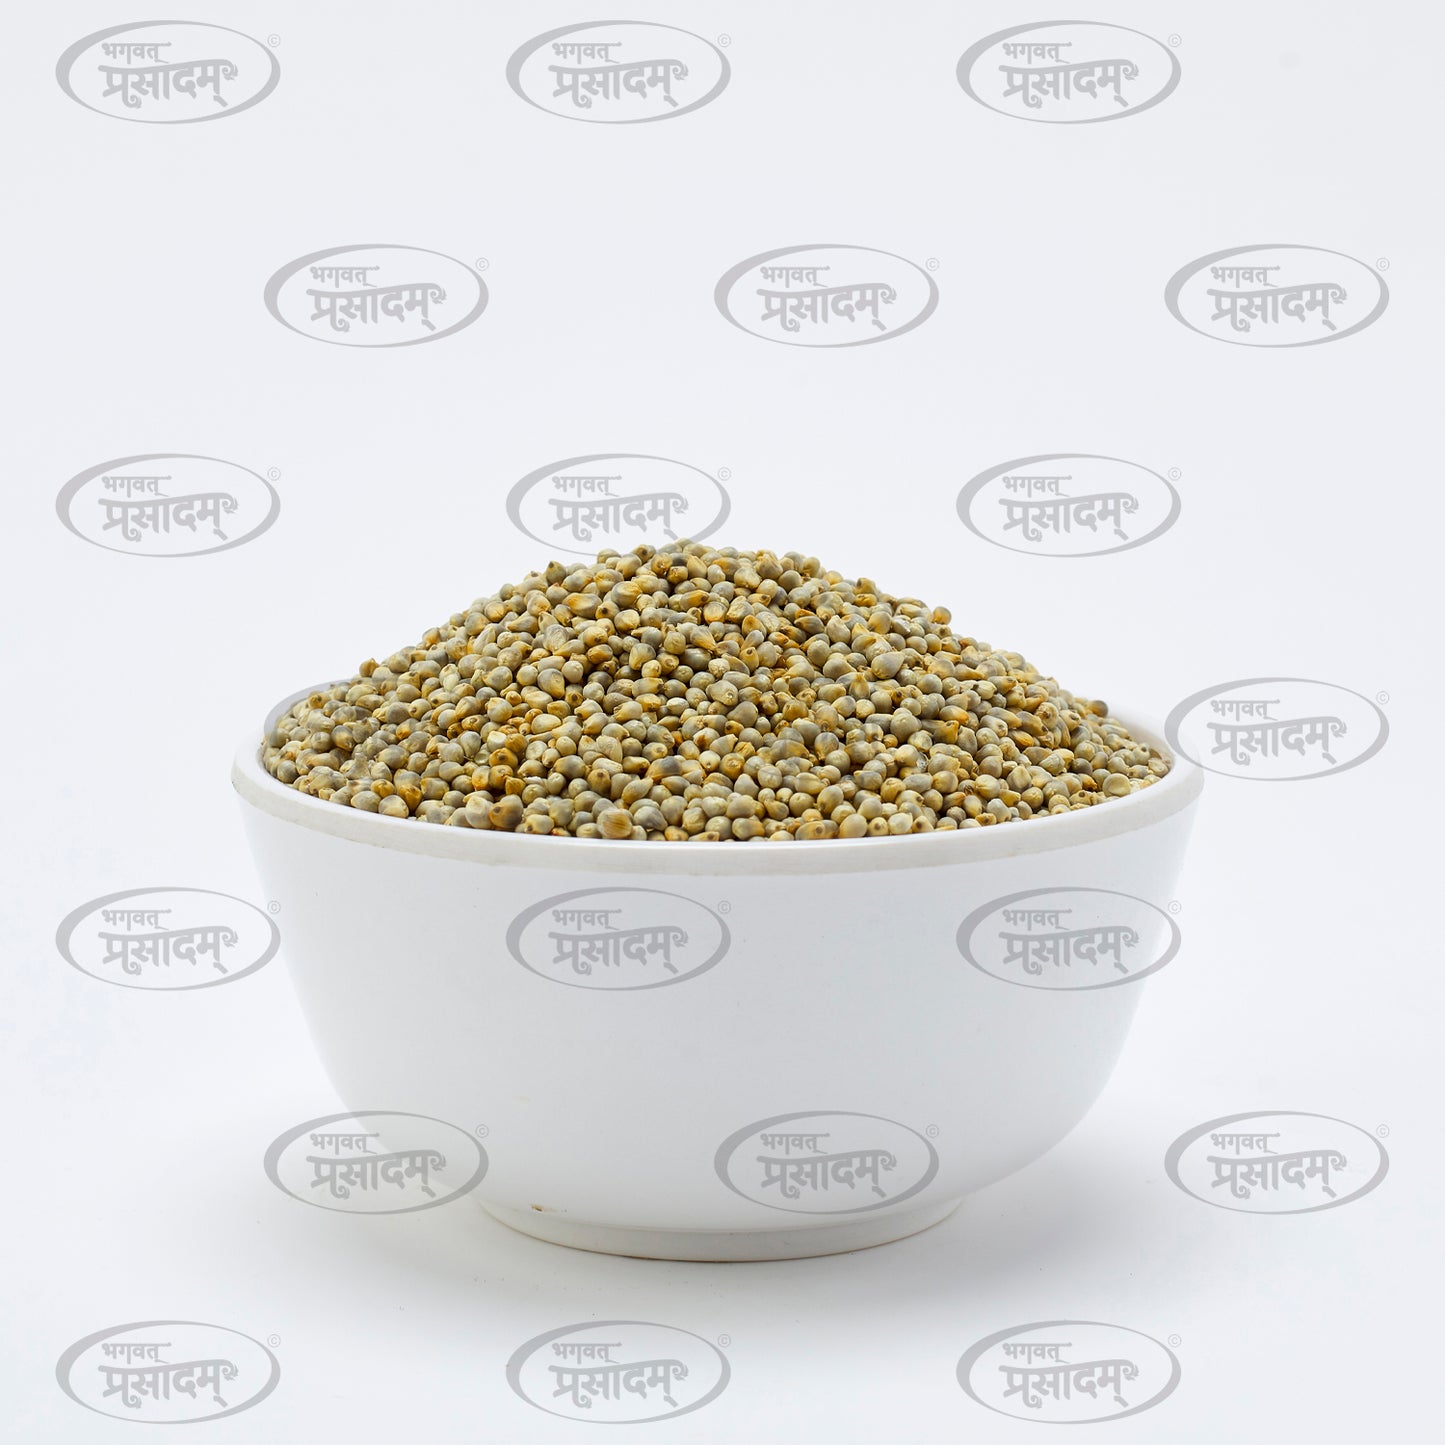 Bajro (Pearl Millet) - Wholesome Gluten-Free Grain by Bhagvat Prasadam